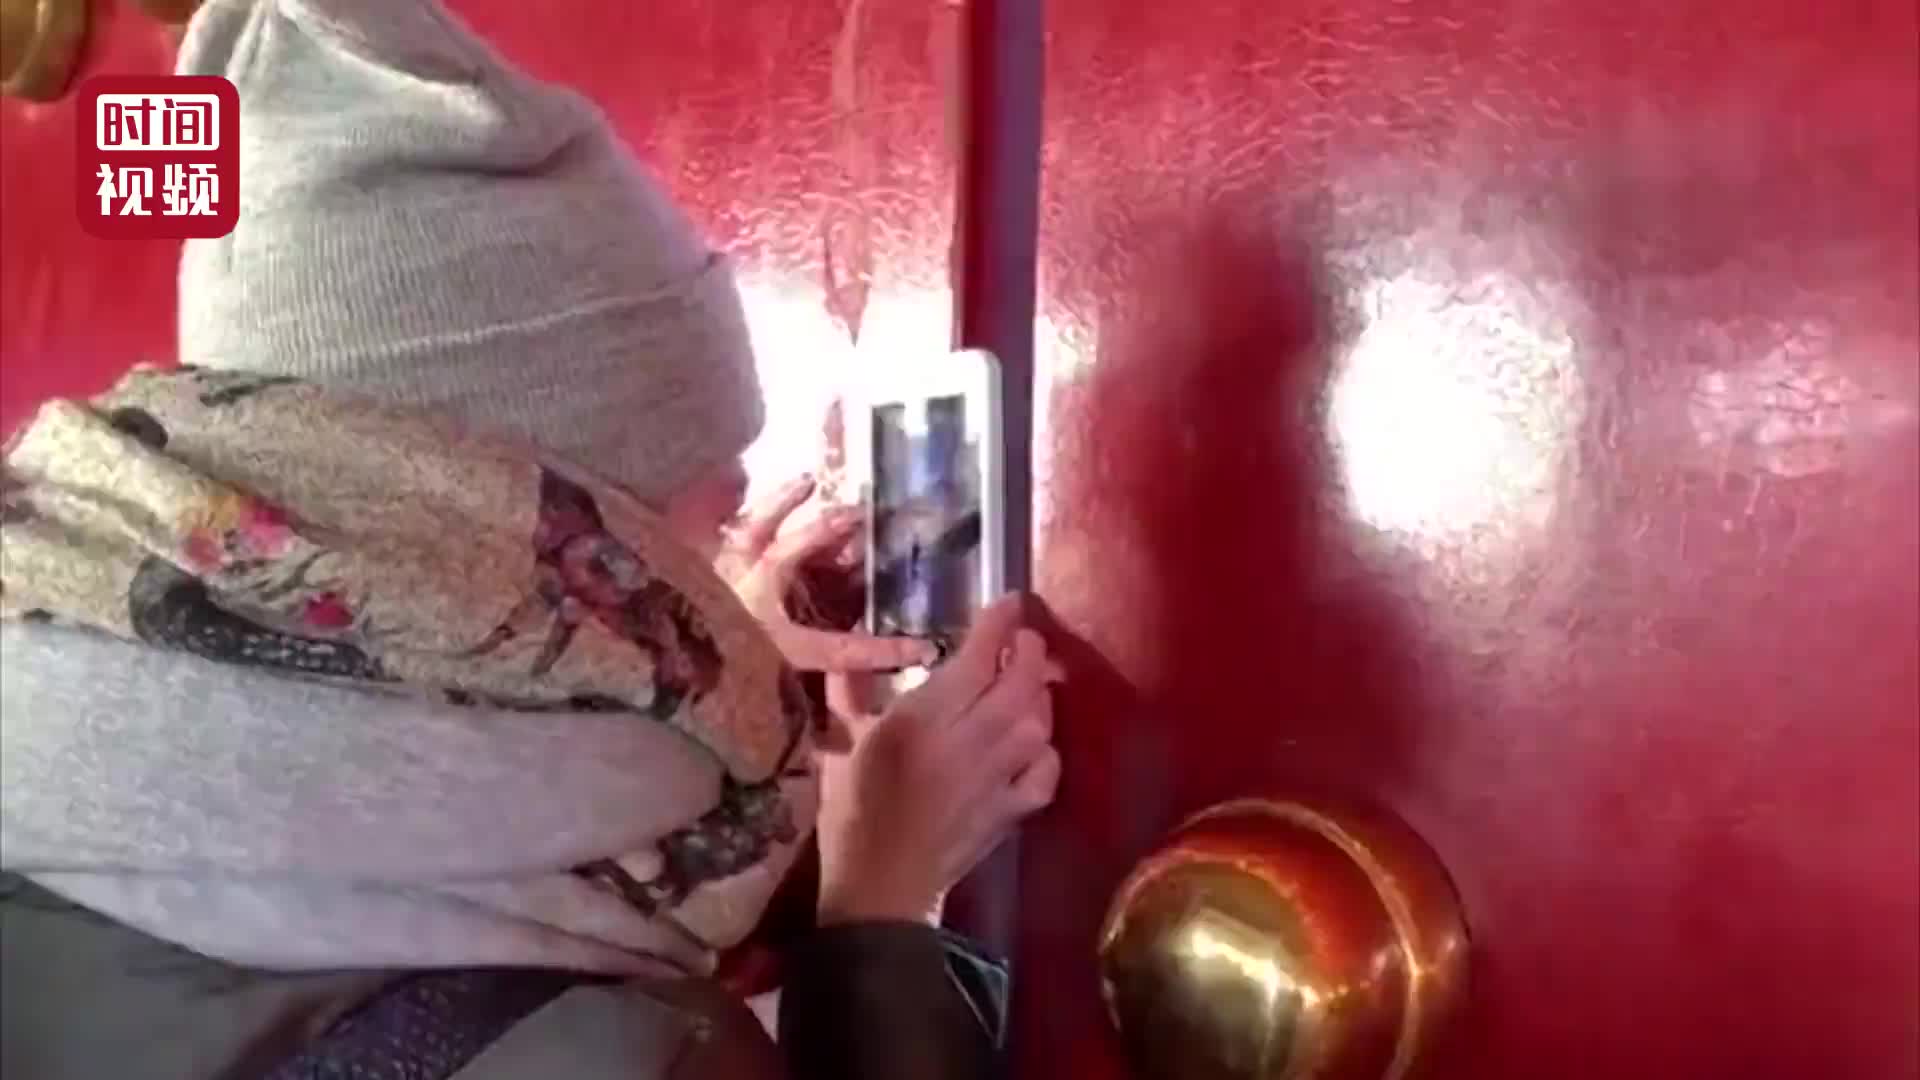 [视频]故宫门缝拍照走红 游客排队20分钟拍完却看不懂